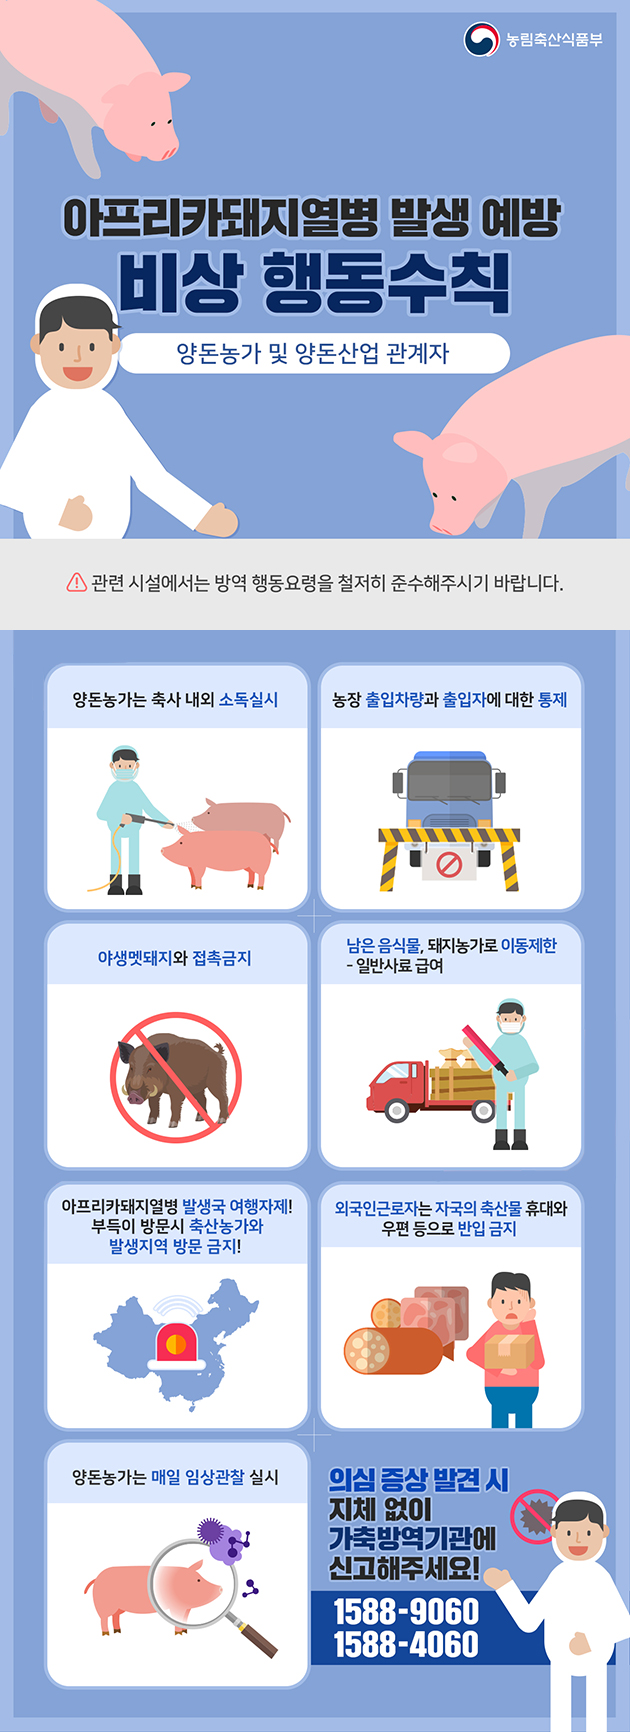 [대한민국] 아프리카돼지열병 예방 비상 행동수칙